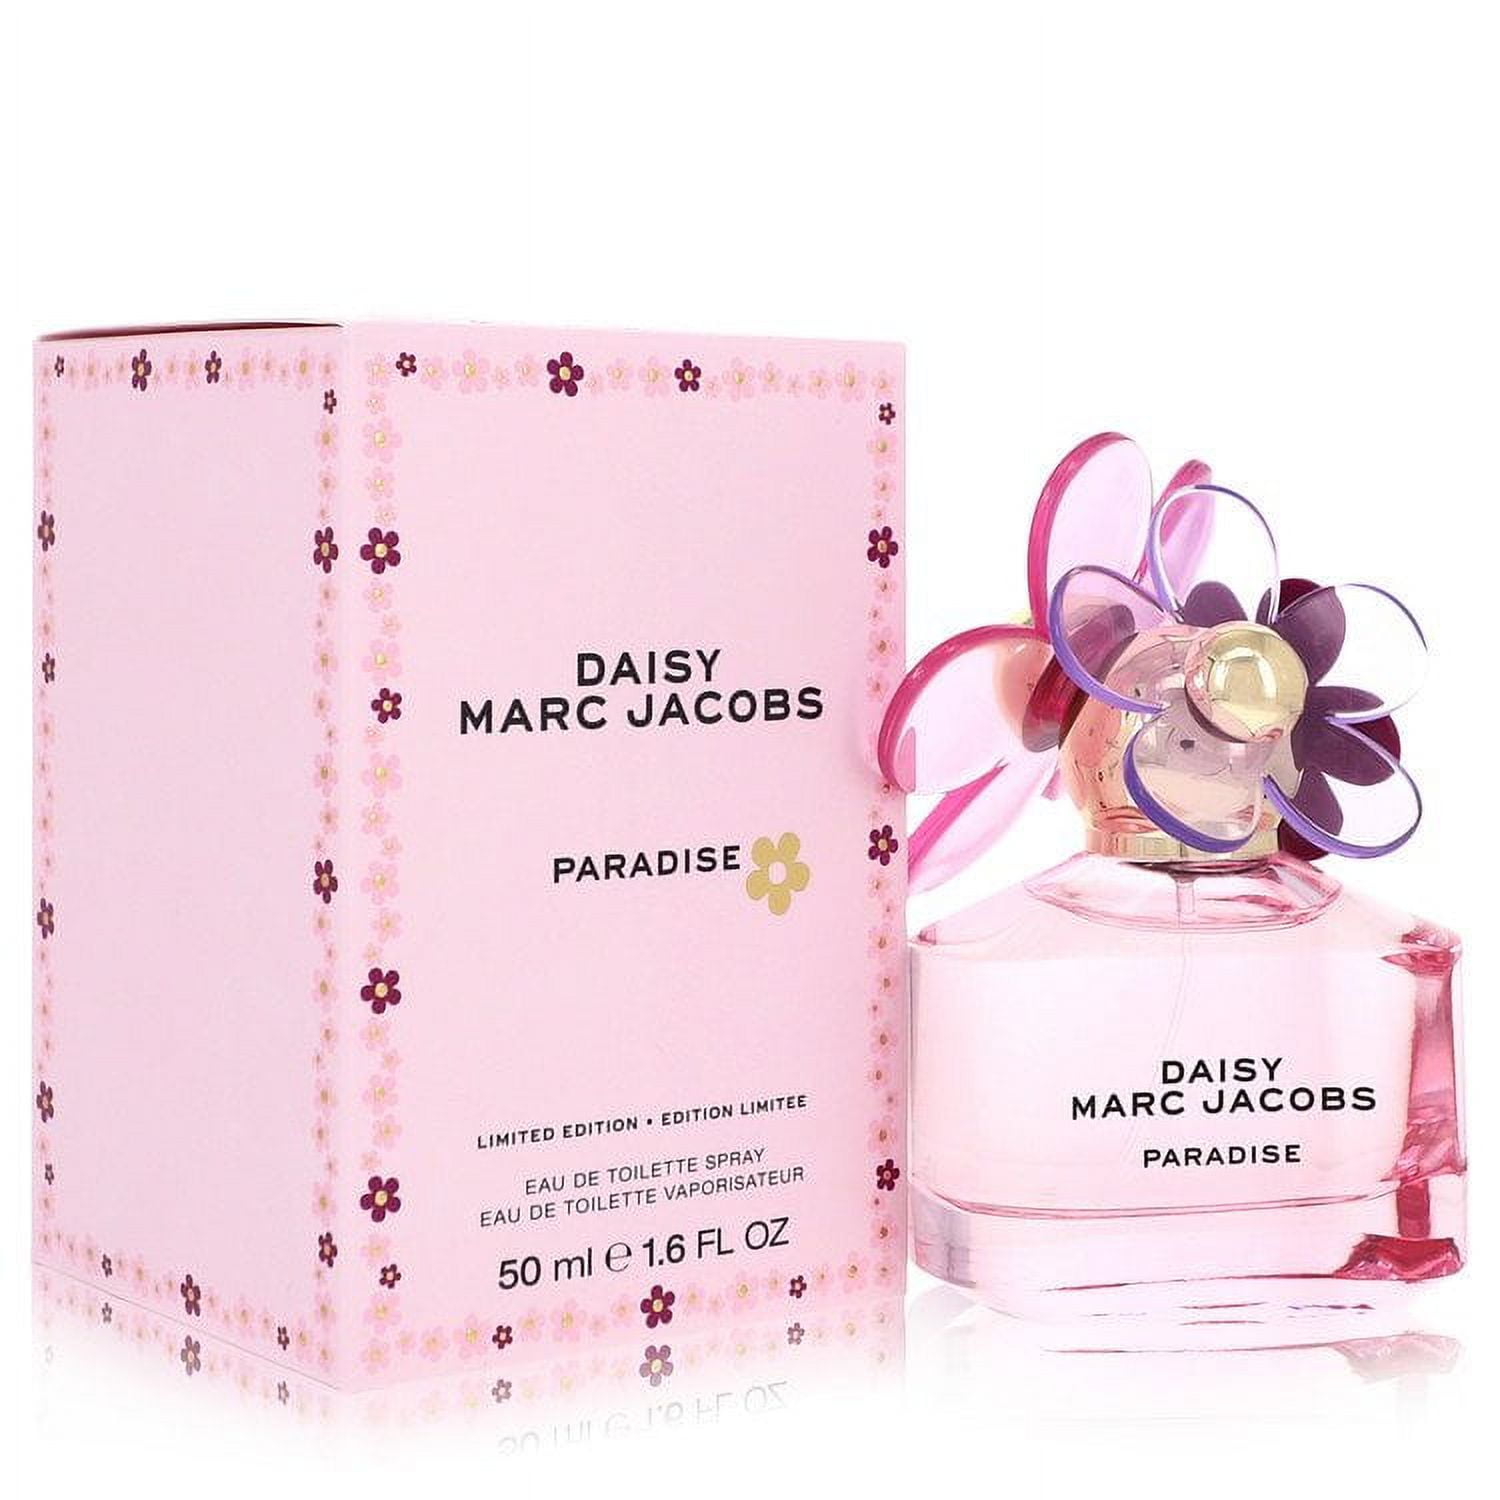 Buy The perfume Store PARADISE Eau de Parfum - 60 ml Online In